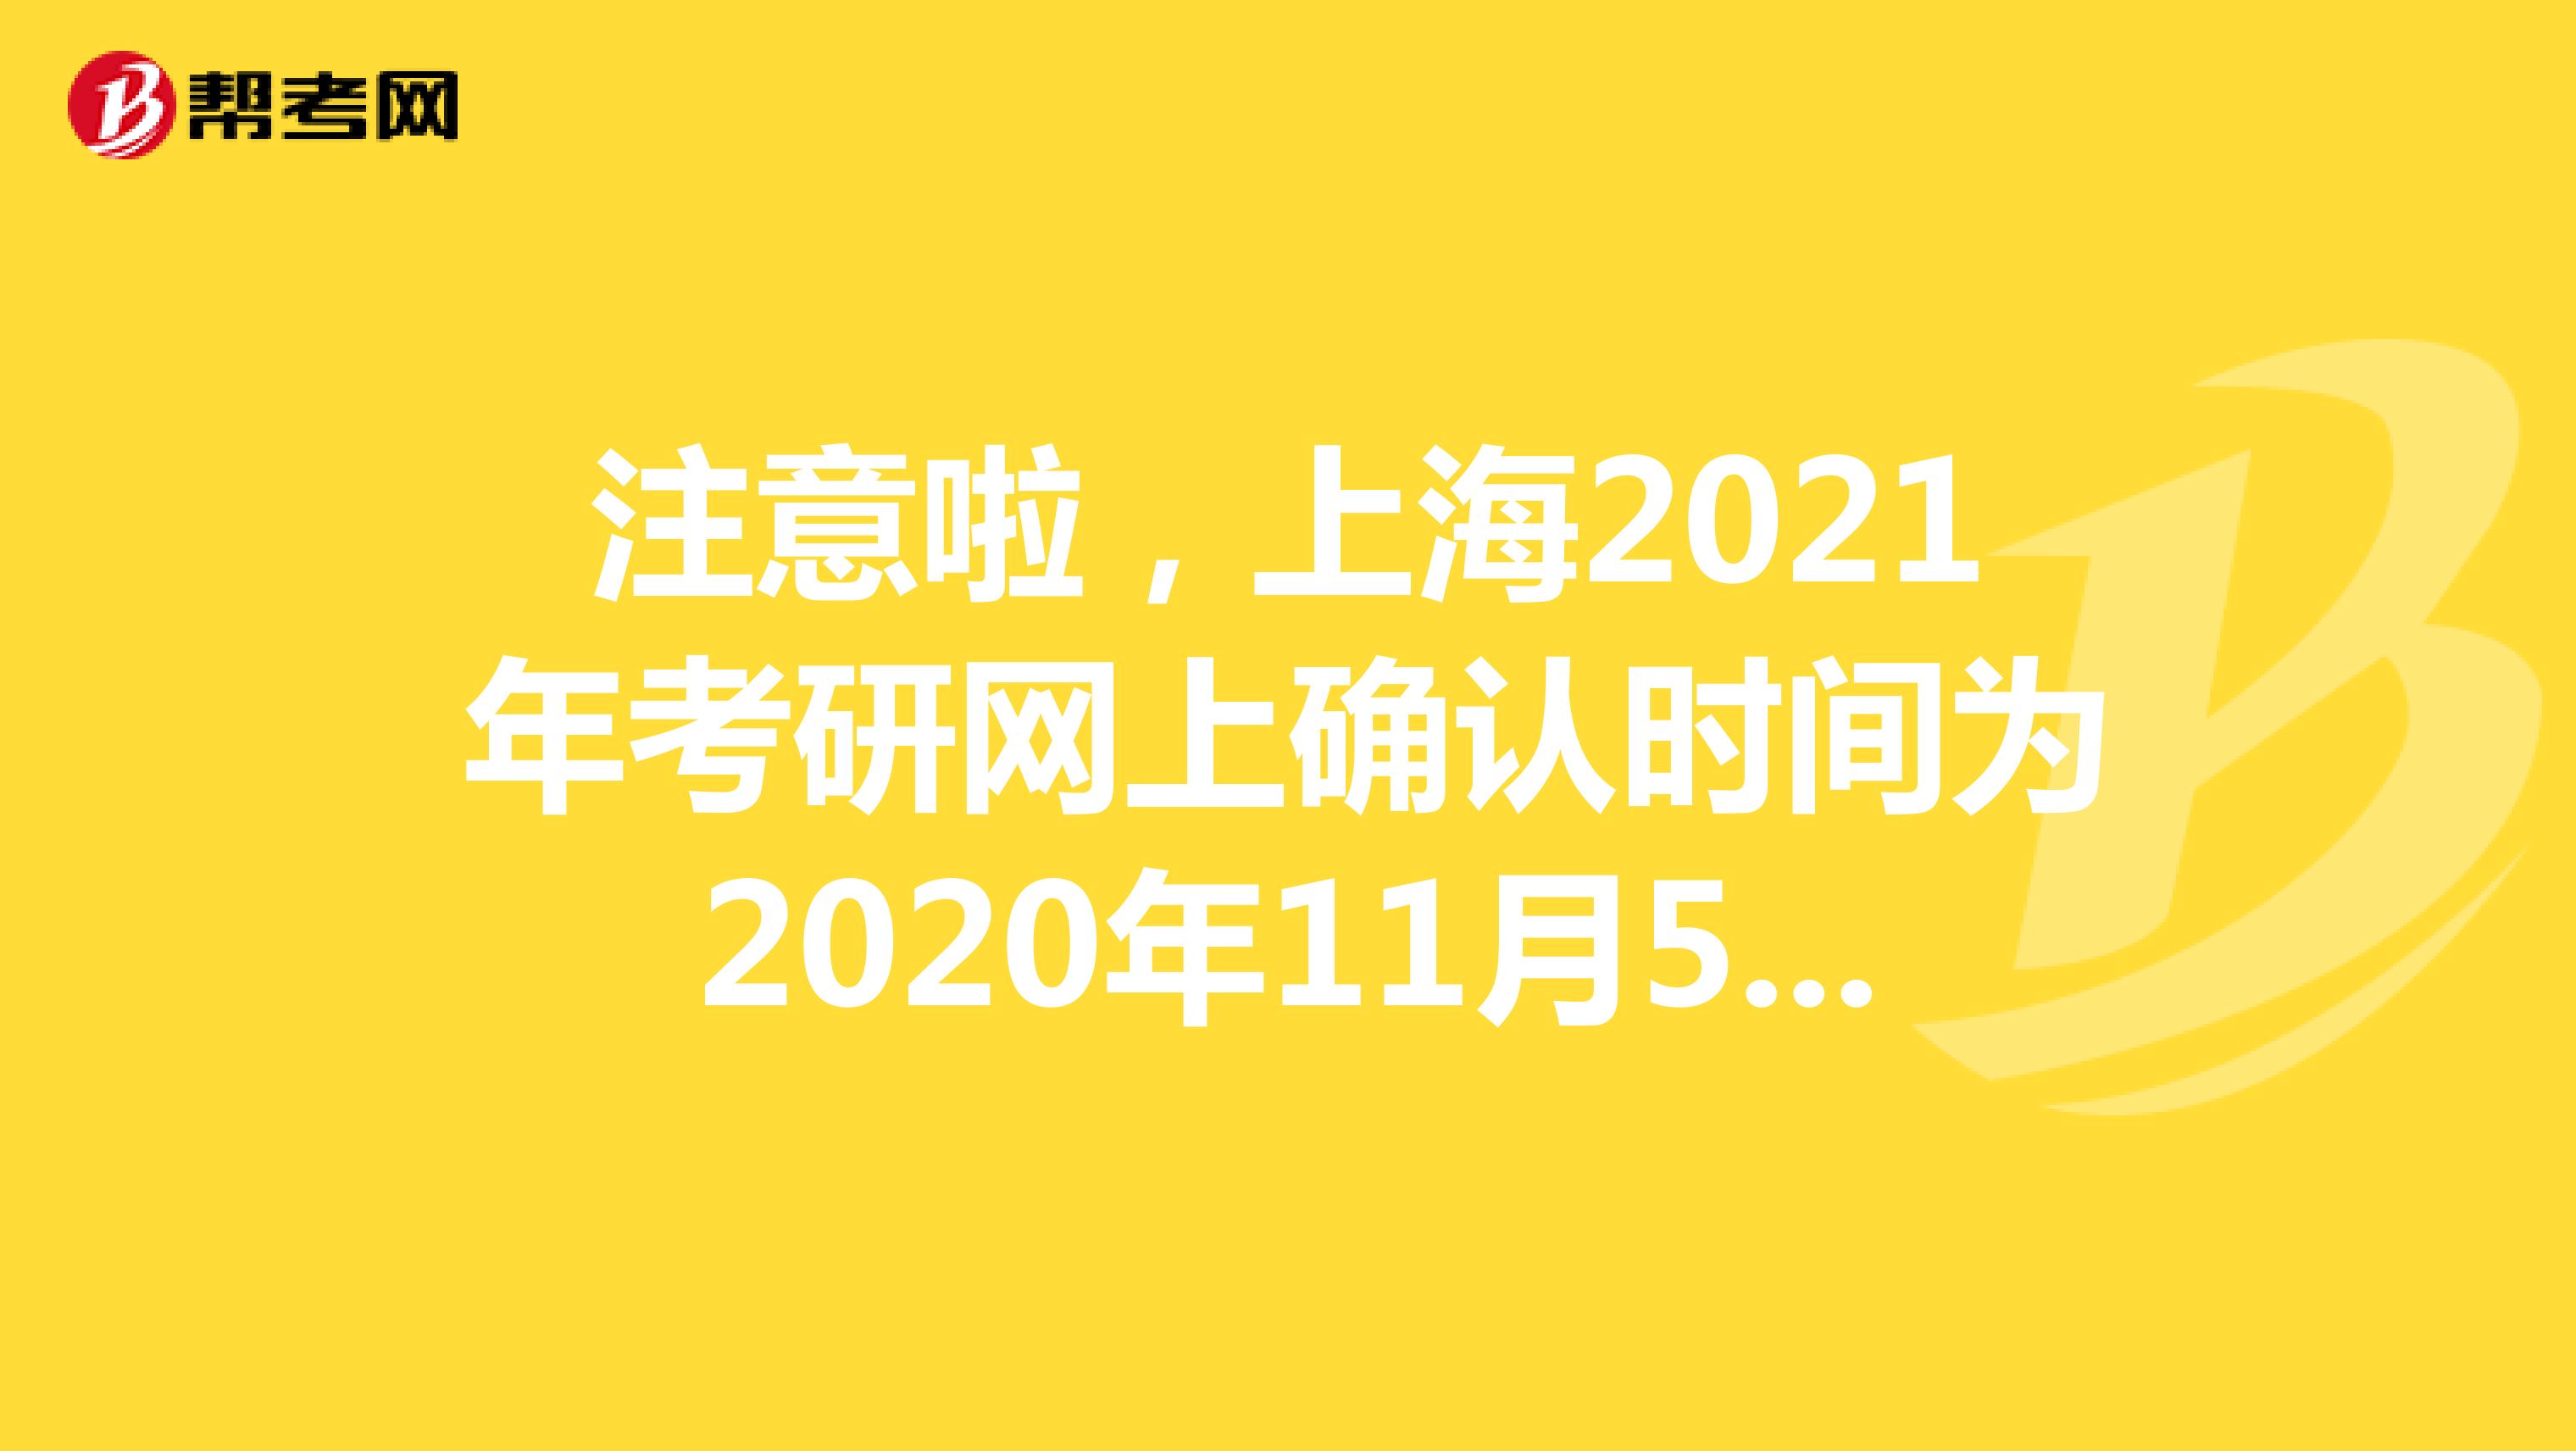 注意啦，上海2021年考研网上确认时间为2020年11月5日-9日